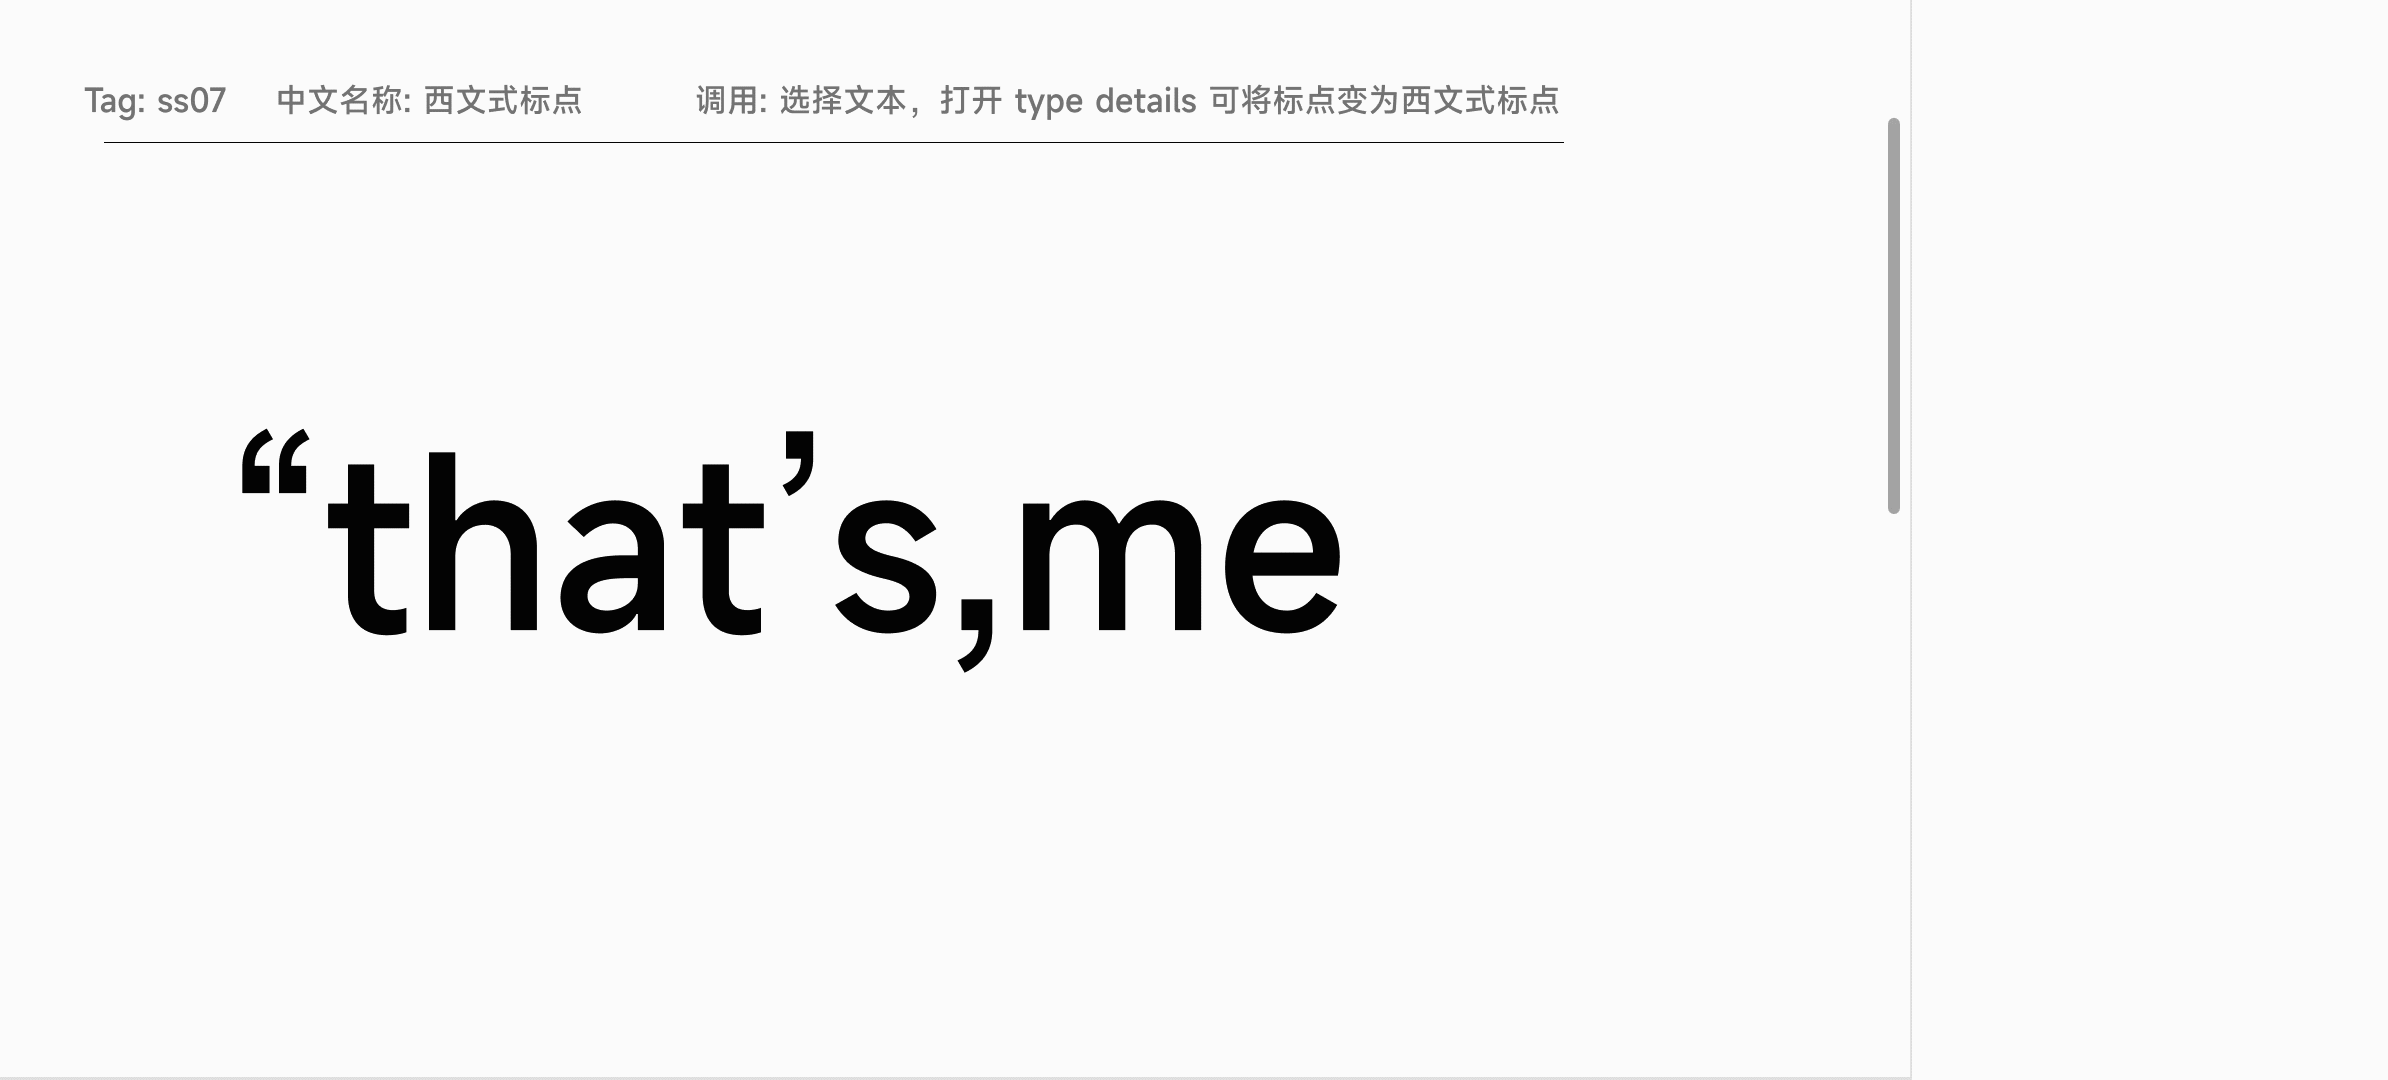 小米推出全新 MiSans 字体：MIUI13 系统内置，全社会可免费商用